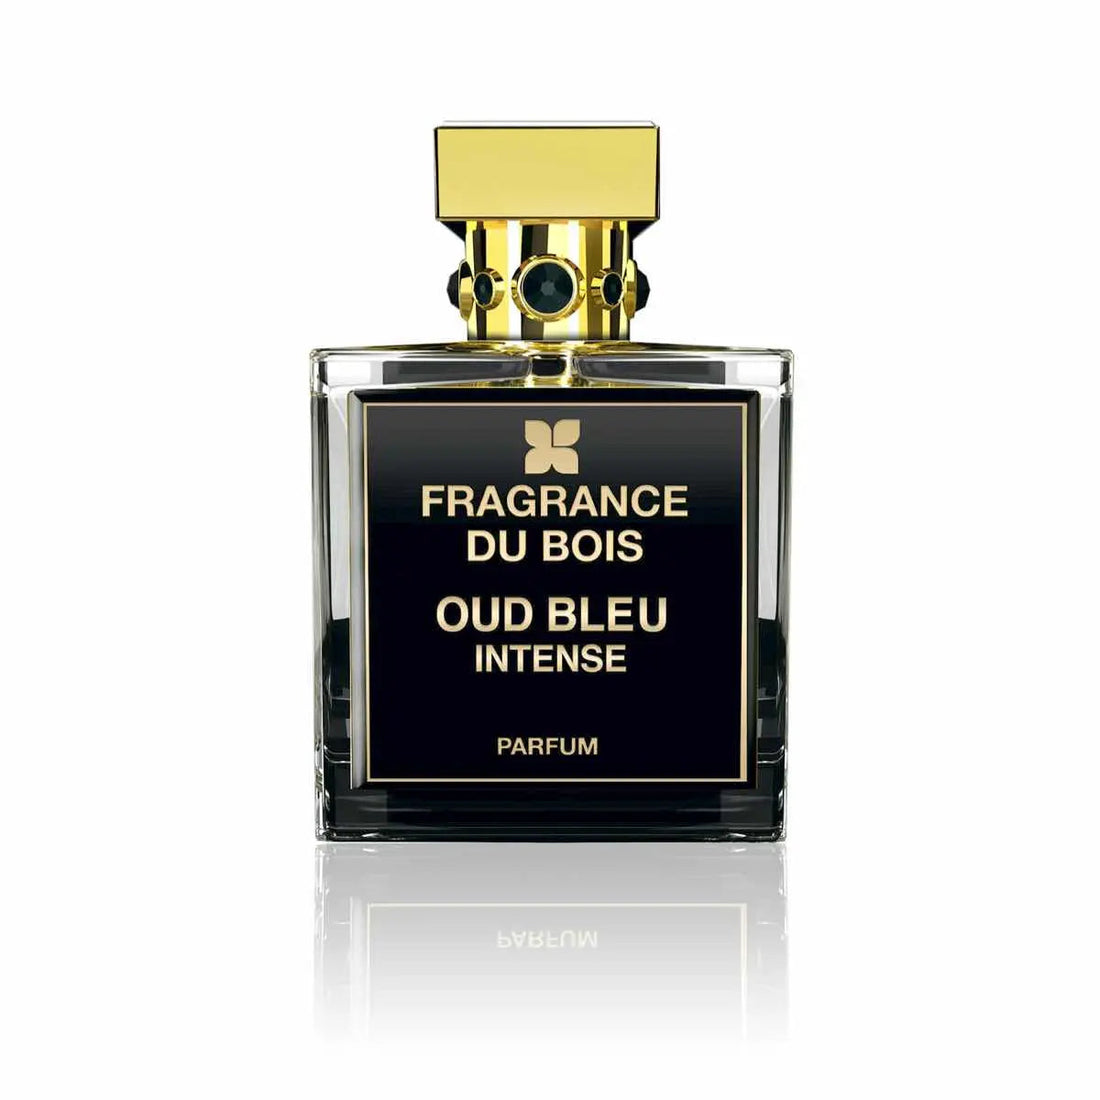 Fragrance du bois Oud Bleu Intense profumo - 100 ml